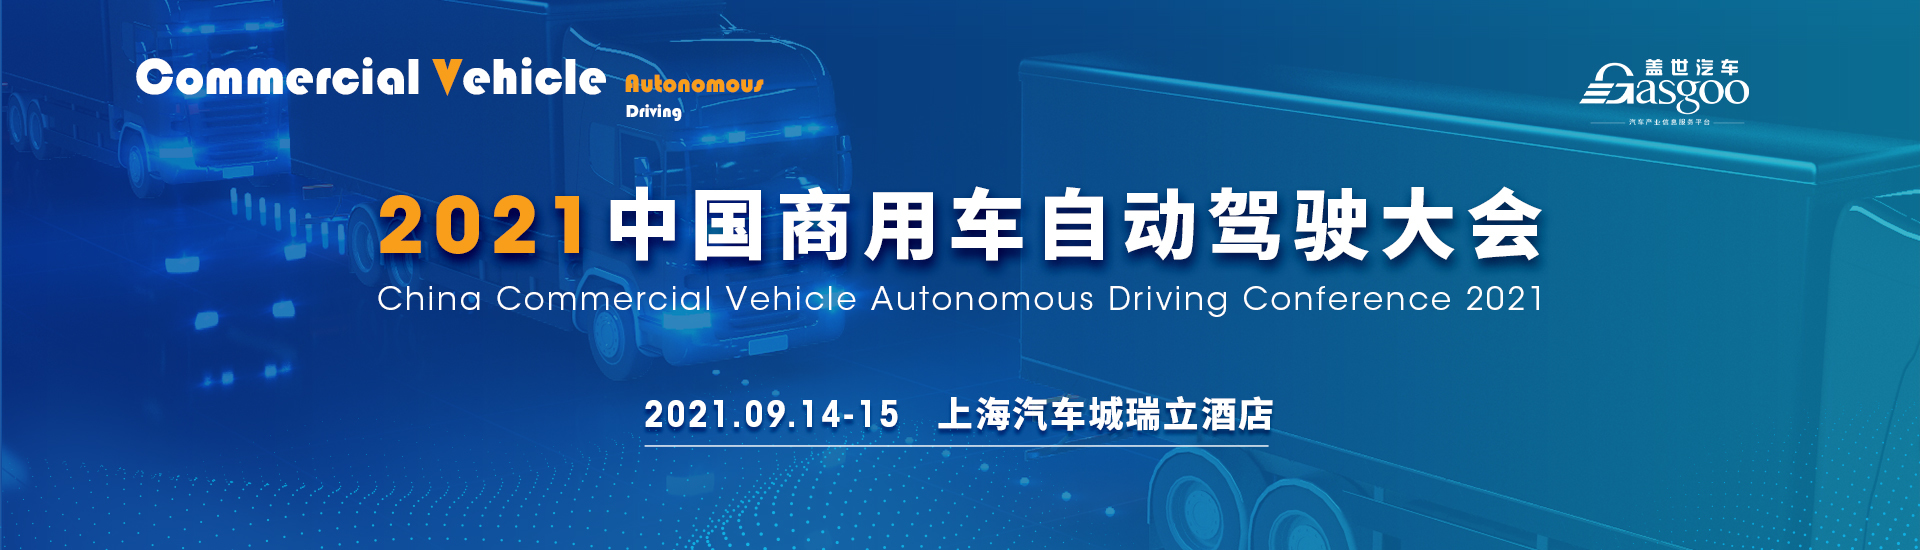 盖世汽车2021中国商用车自动驾驶大会